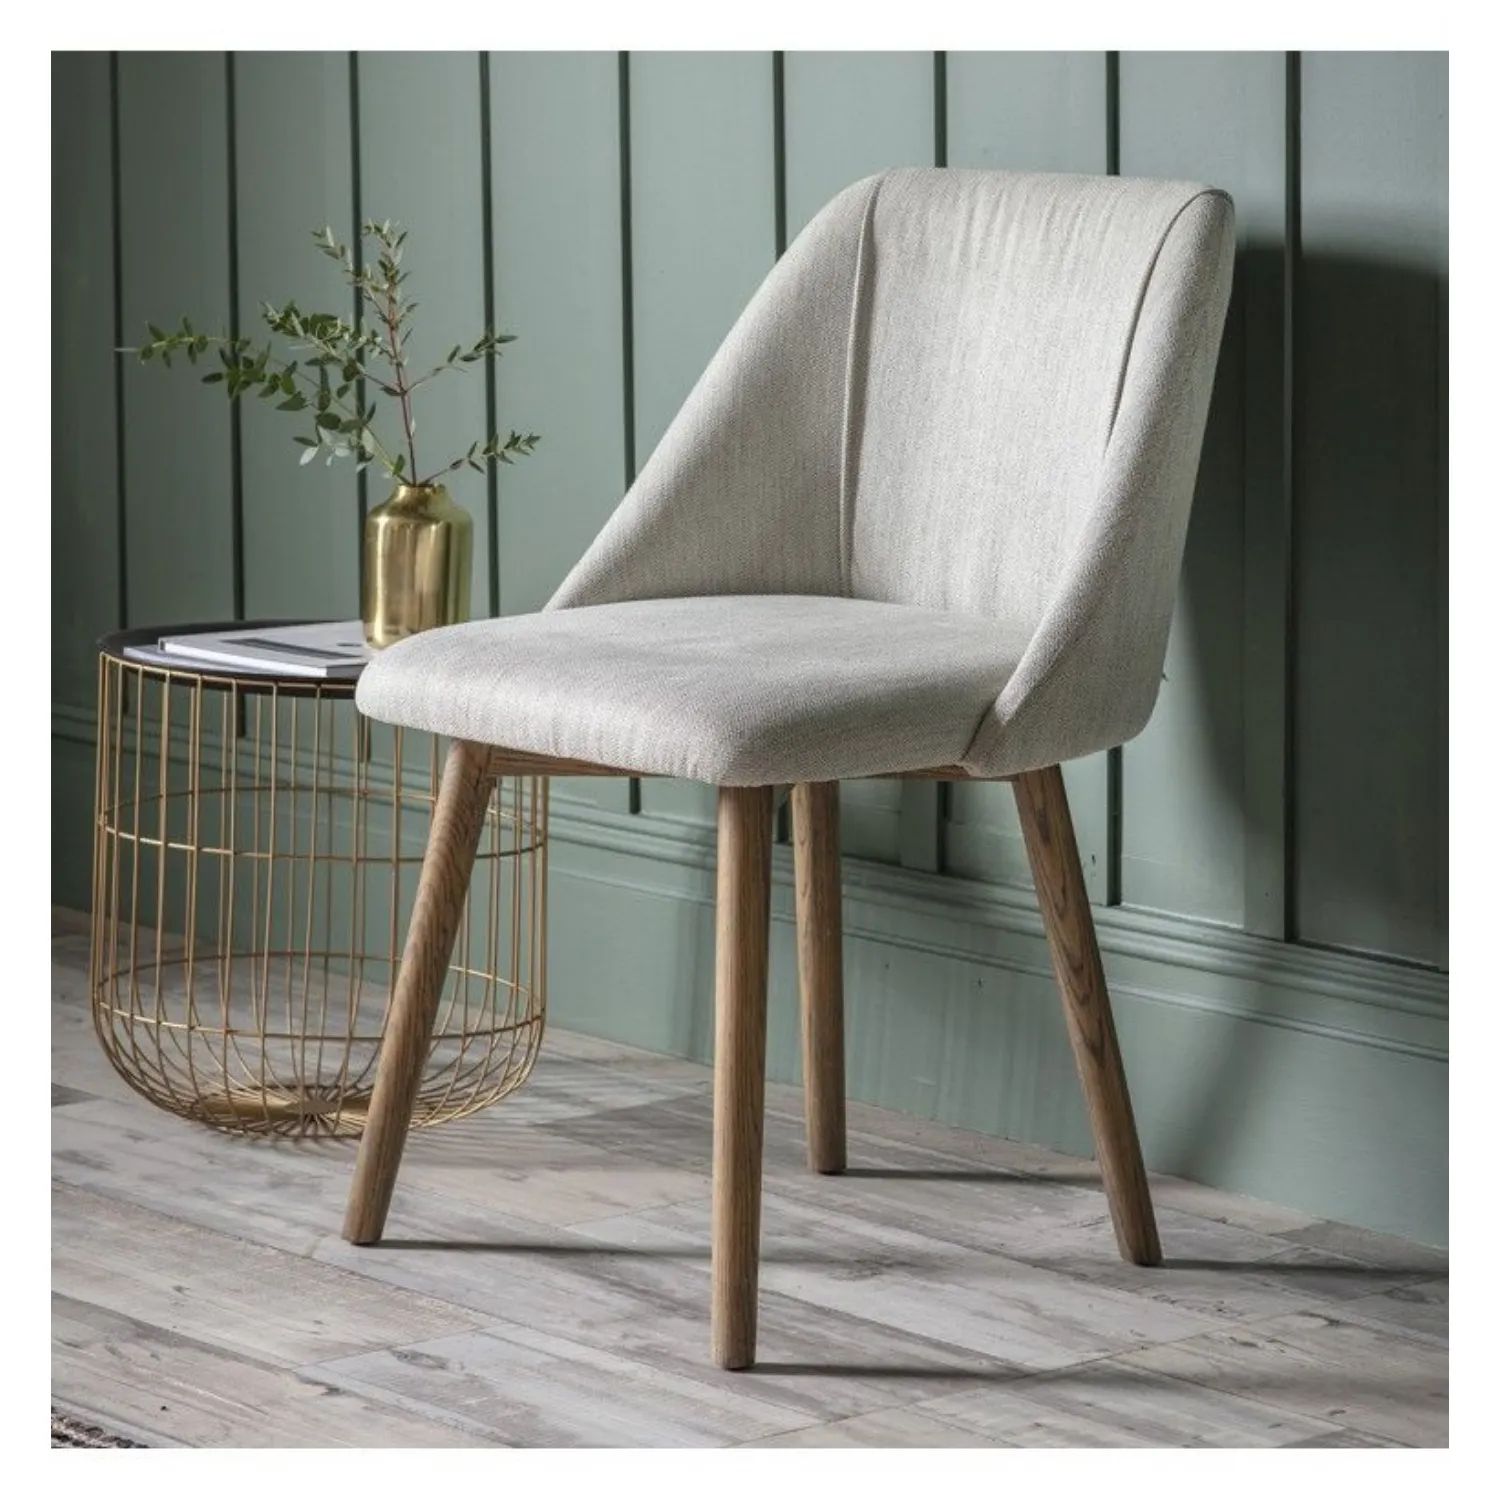 Neutral Linen Fabric Dining Chair Wooden Legs